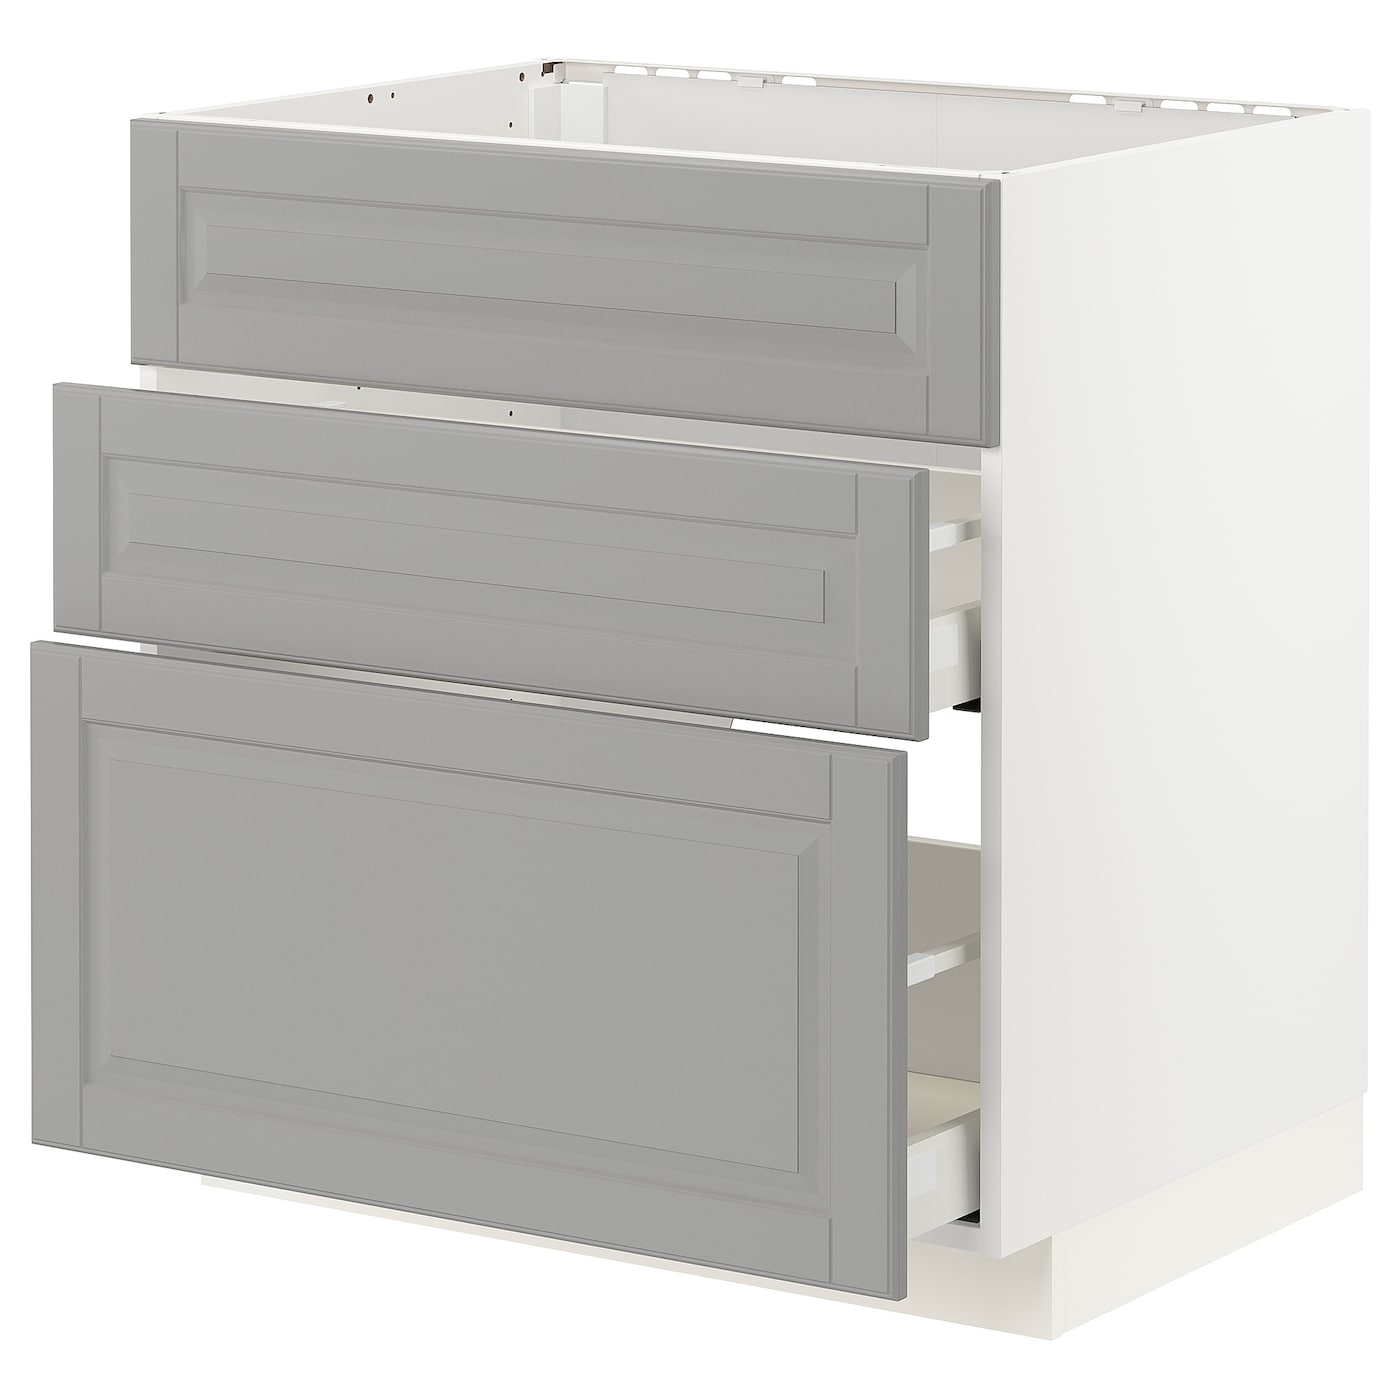 Напольный шкаф - IKEA METOD MAXIMERA, 80x62см, белый/серый, МЕТОД МАКСИМЕРА ИКЕА